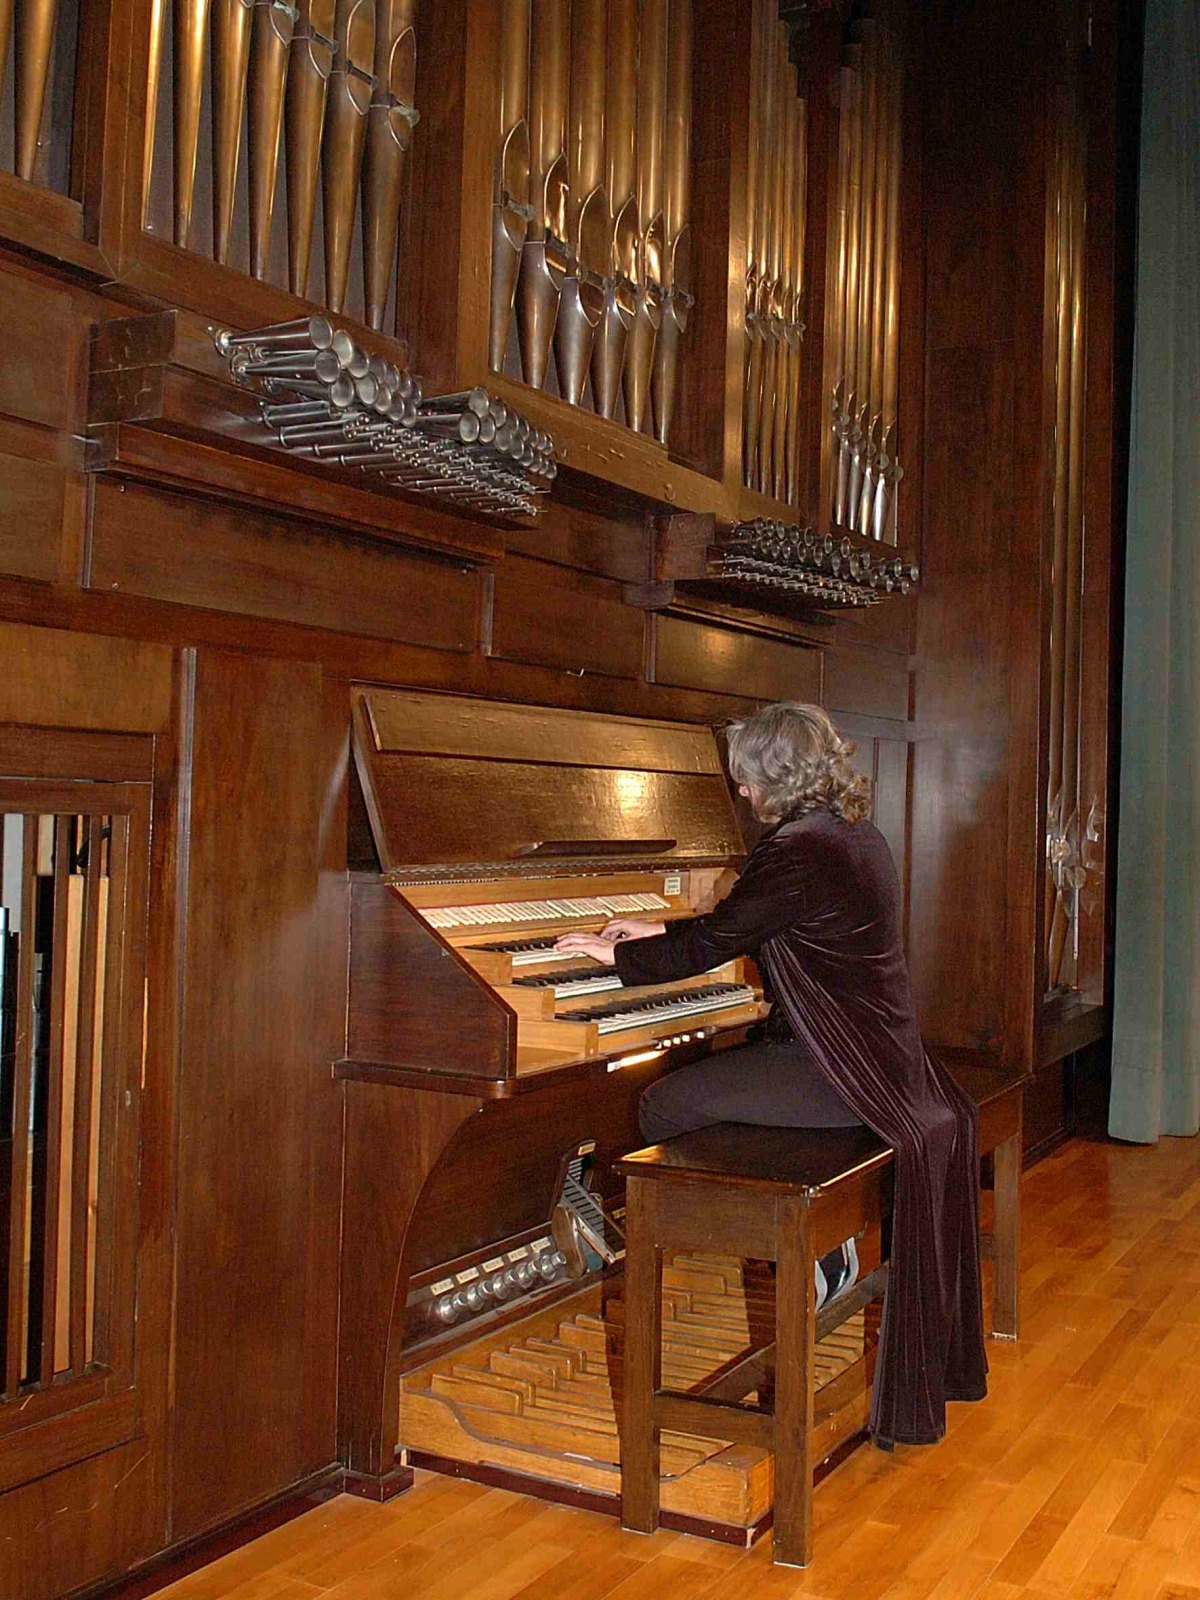 ira viva legal Música barroca: El órgano barroco | Fundación Juan March